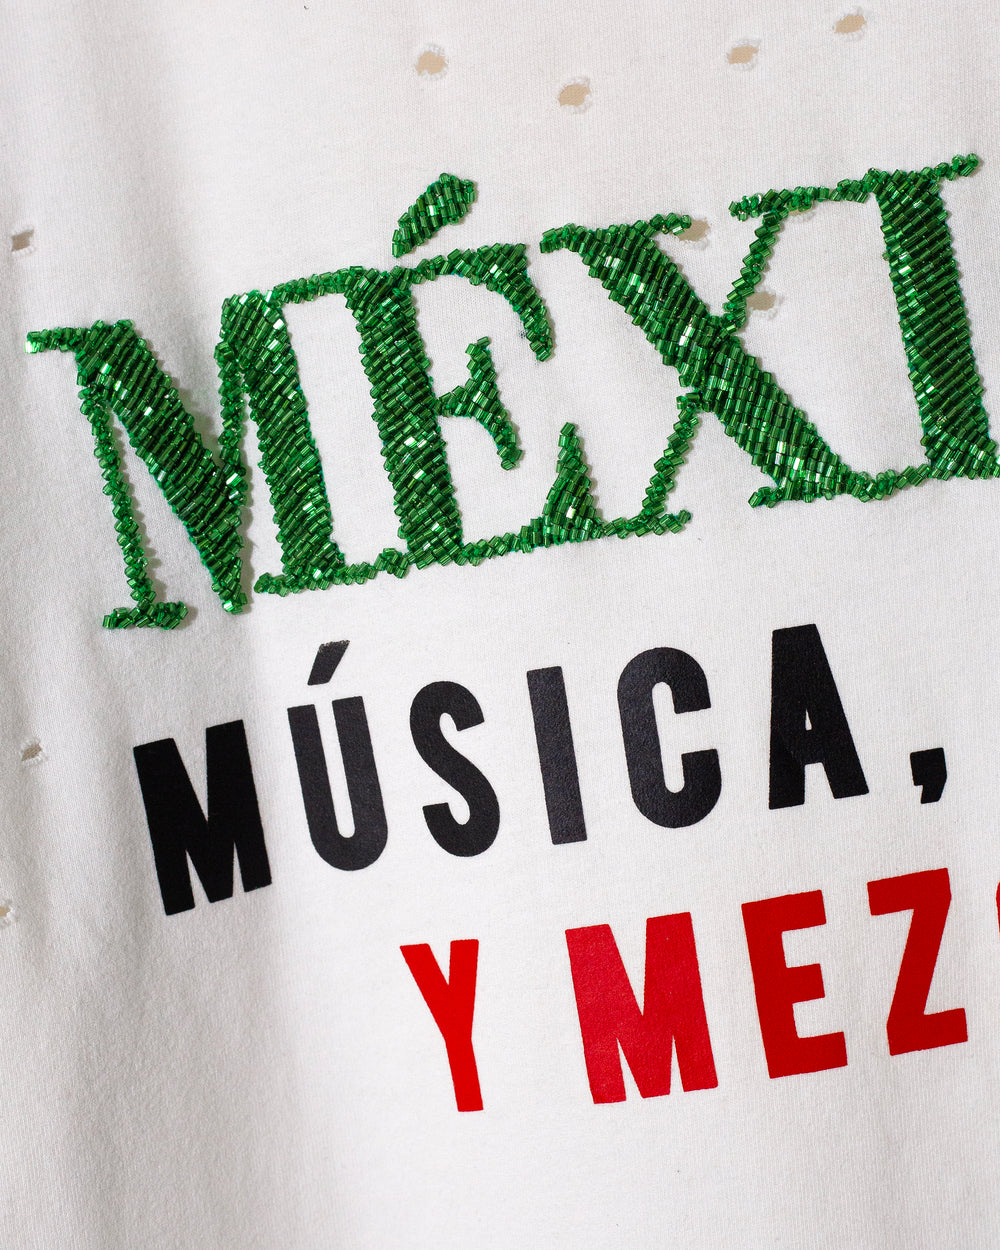 Ripped t shirt México con manga de cristal